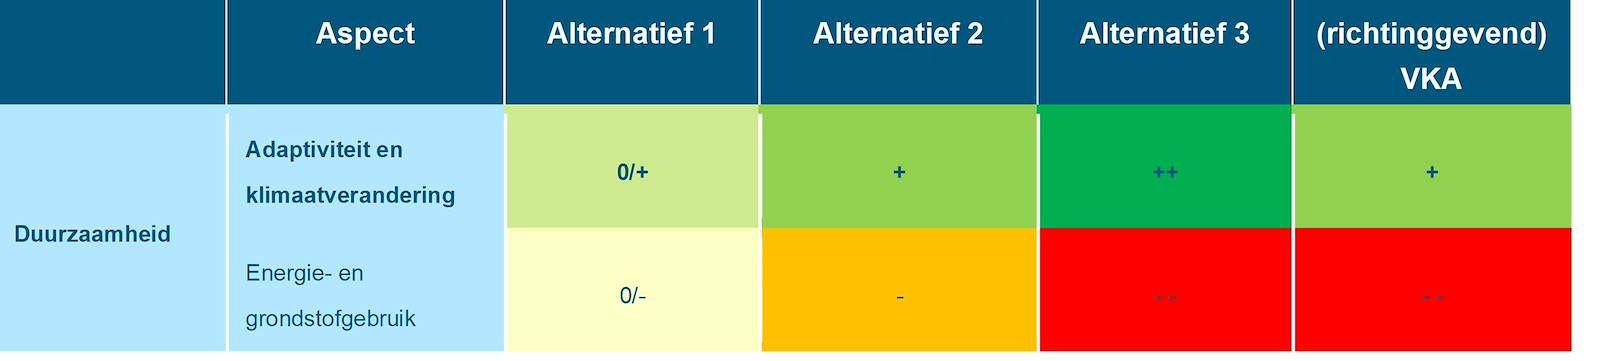 Deze tabel laat de totaalbeoordeling voor de milieueffecten van het beoordelingsaspect duurzaamheid zien voor de Rijntakken, voor de drie alternatieven en het richtinggevend VKA. Deze beoordeling is toegelicht in de tekst voorafgaande aan de tabel.